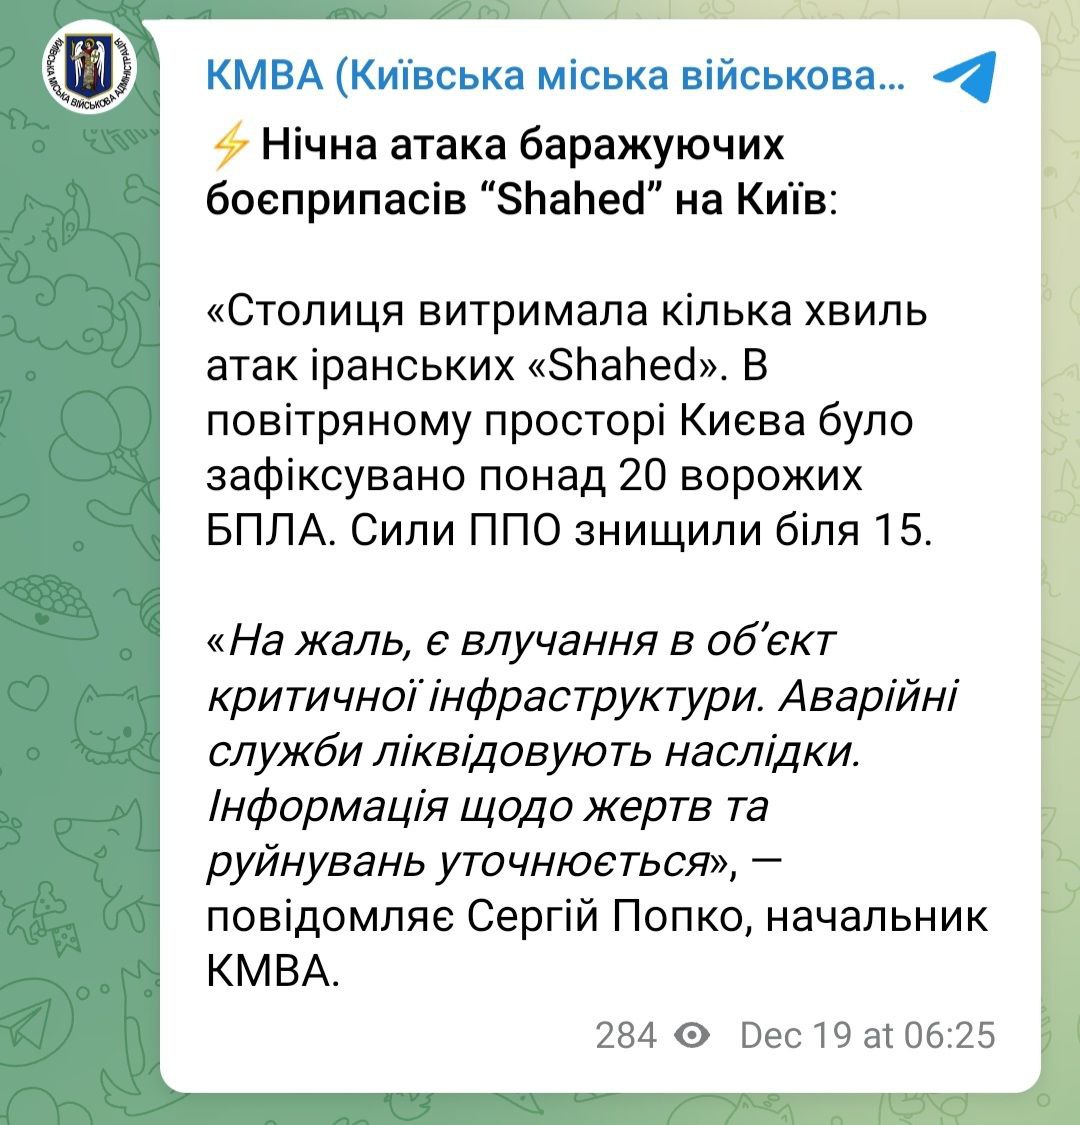 Труха телеграмм украина на русском языке смотреть онлайн бесплатно фото 81